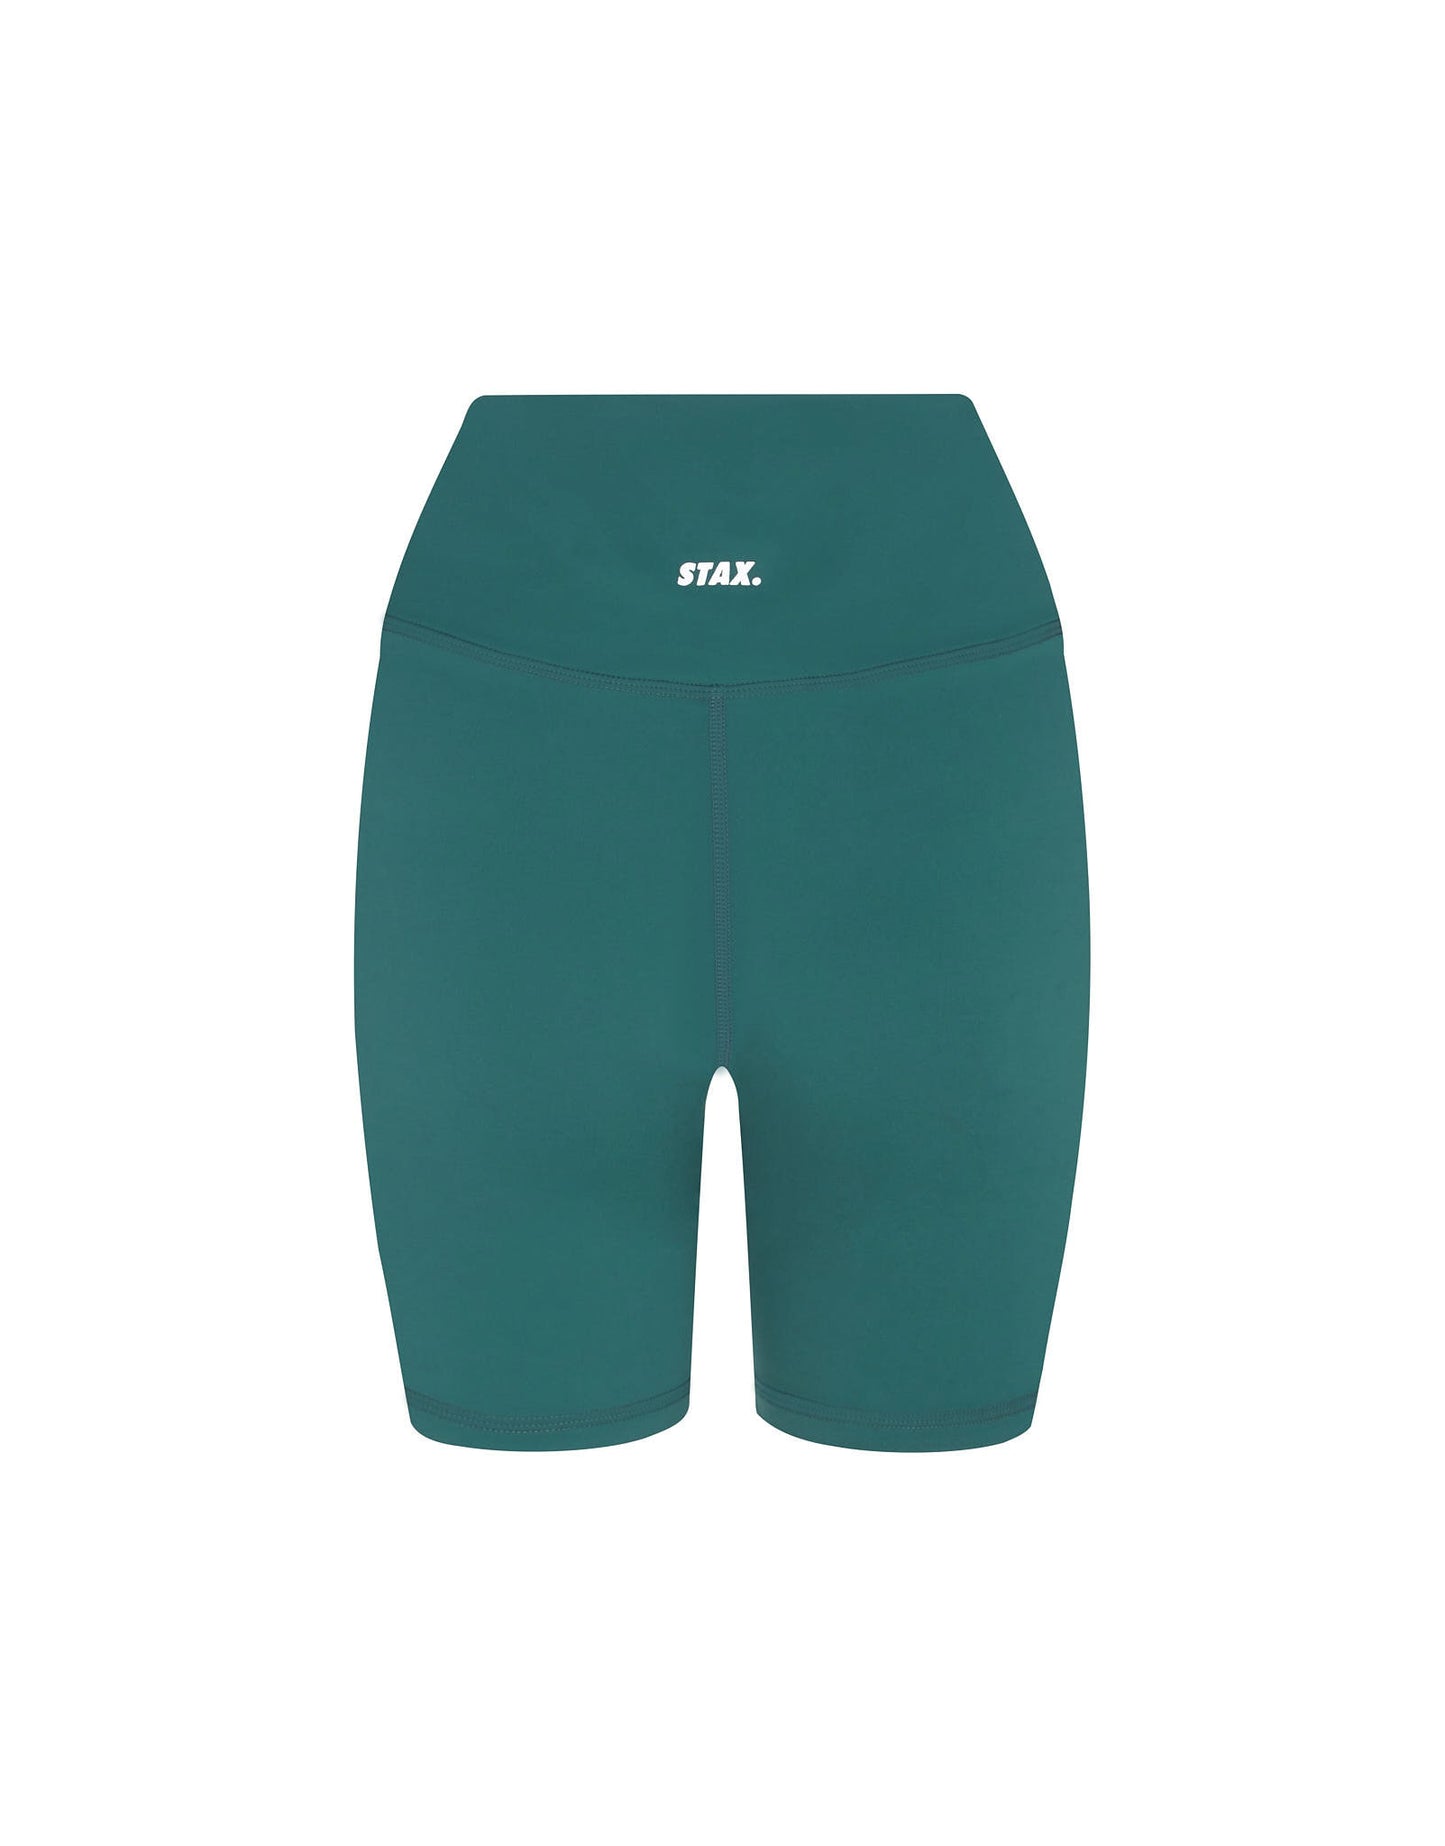 STAX. Midi Bike Shorts NANDEX ™ Aspen - Green